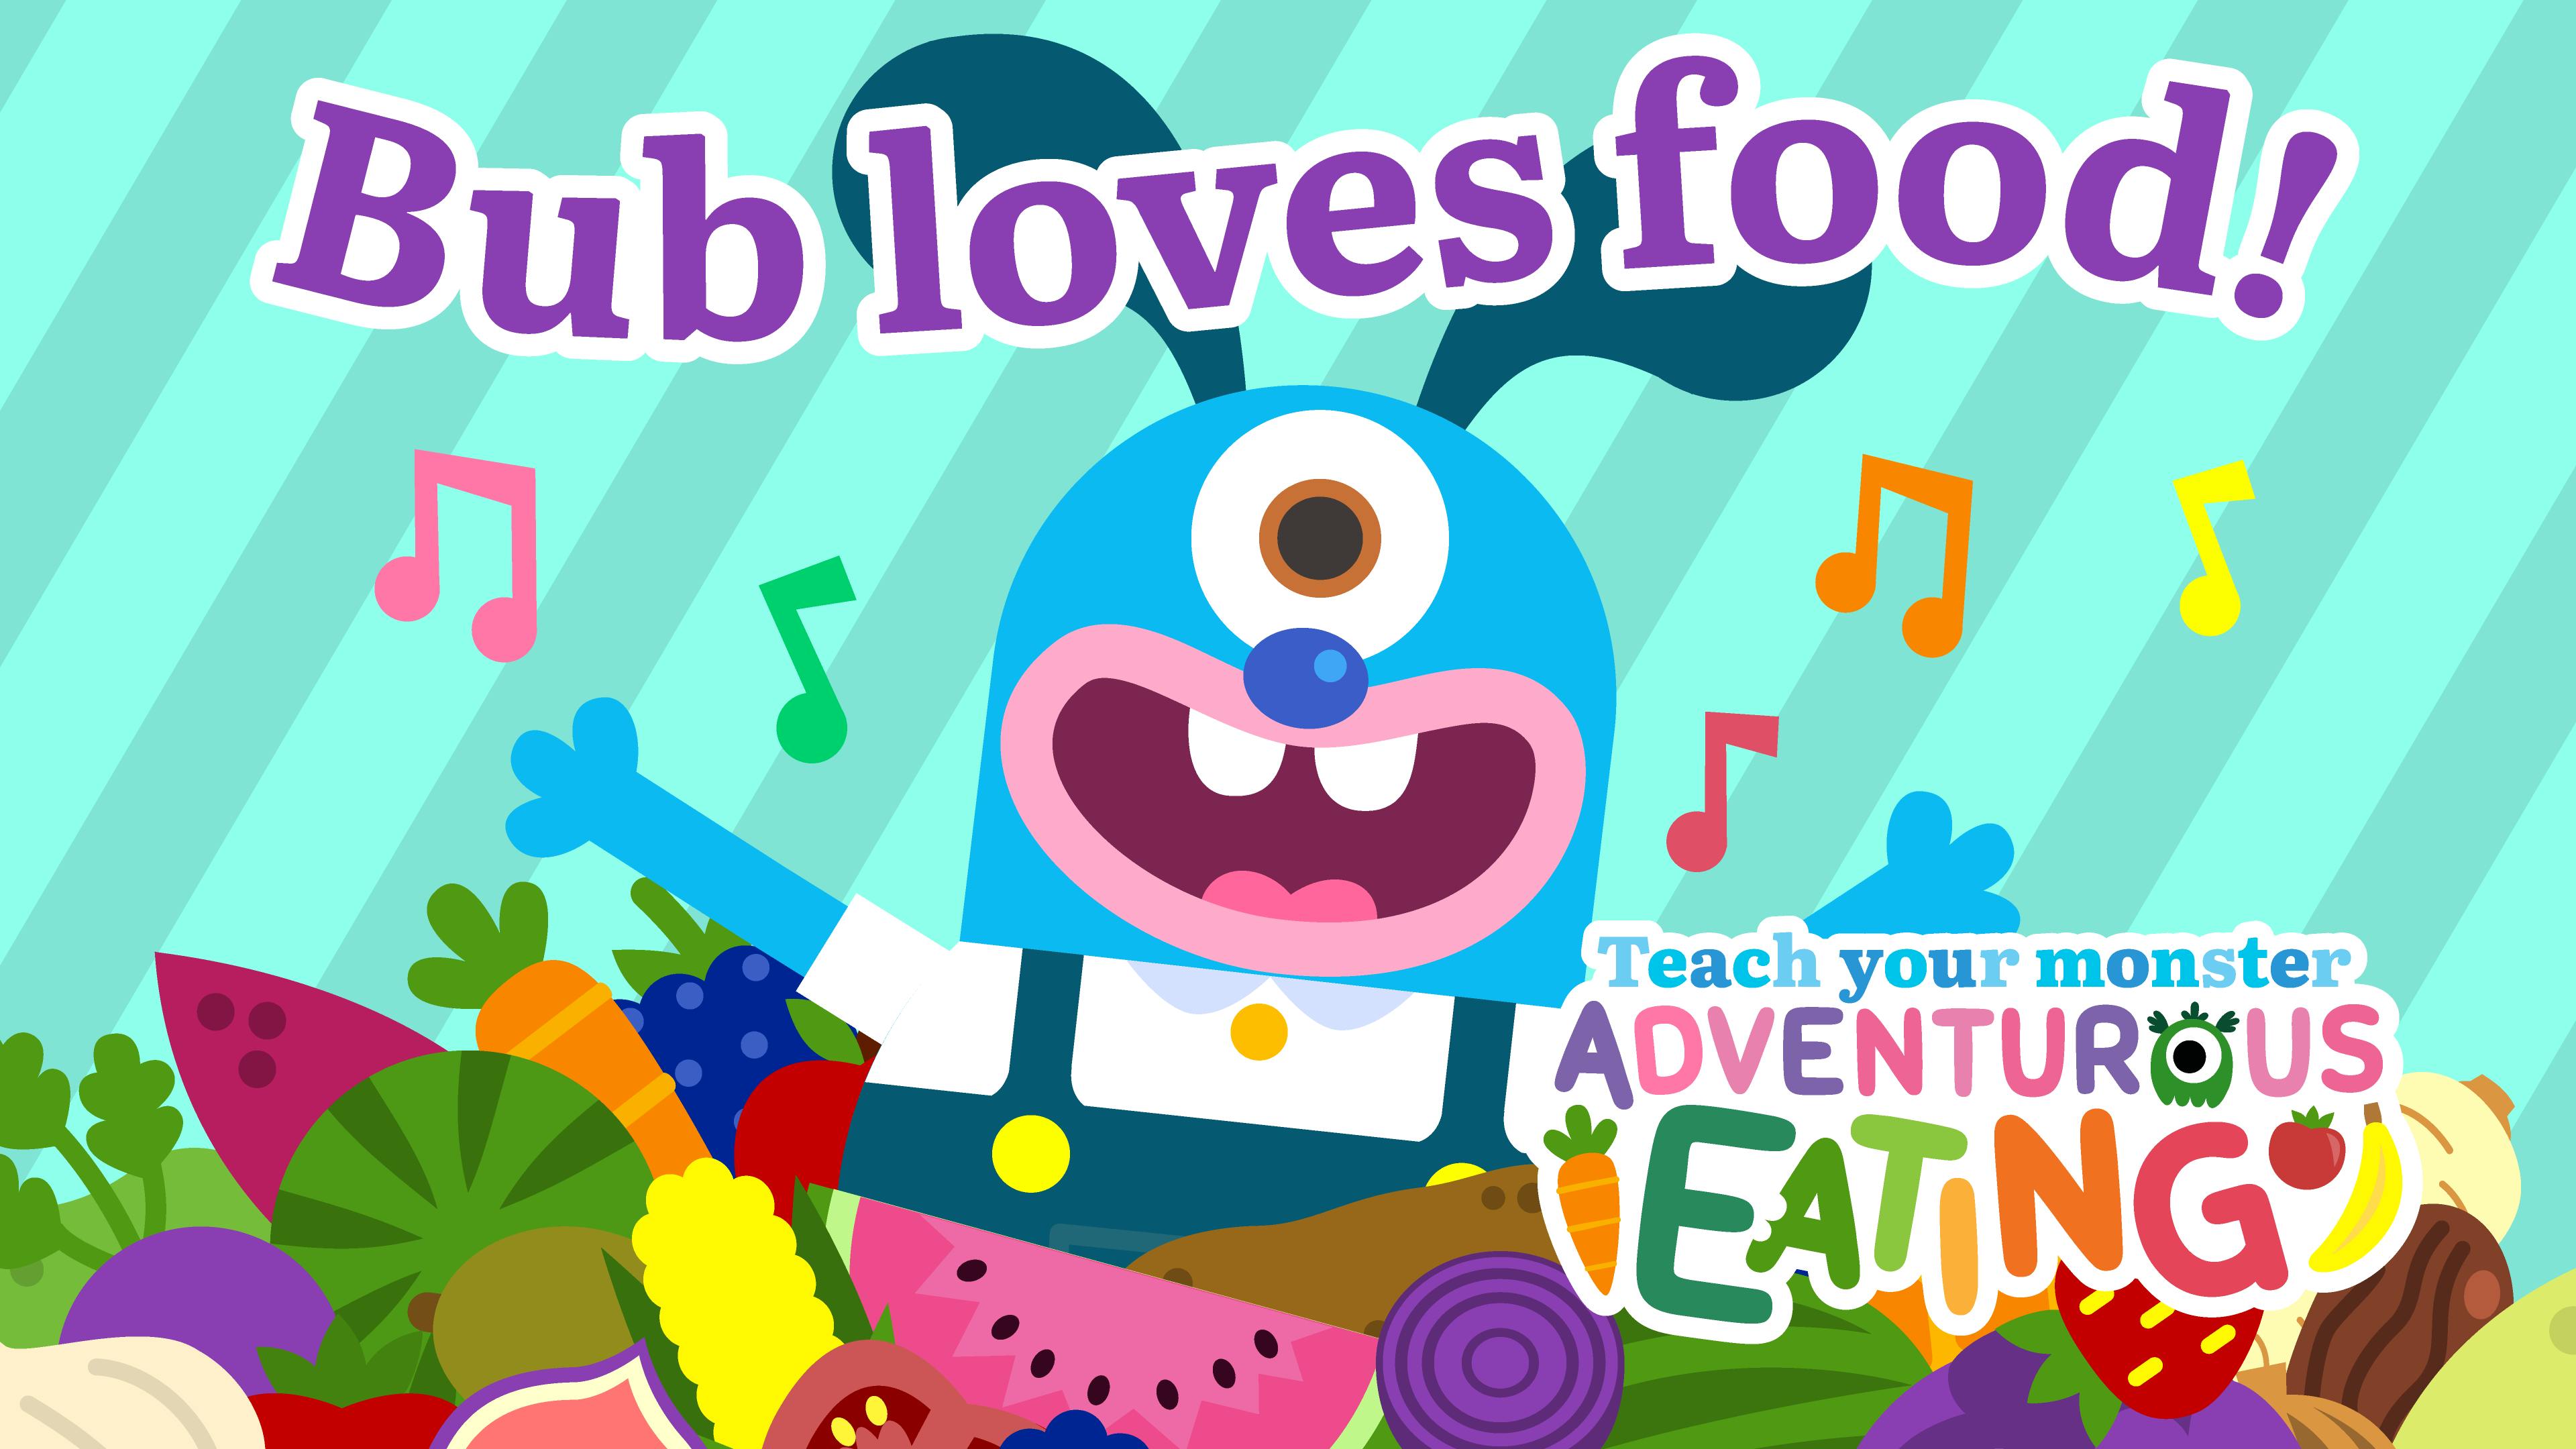 Adventurous Eating - Bub loves food song